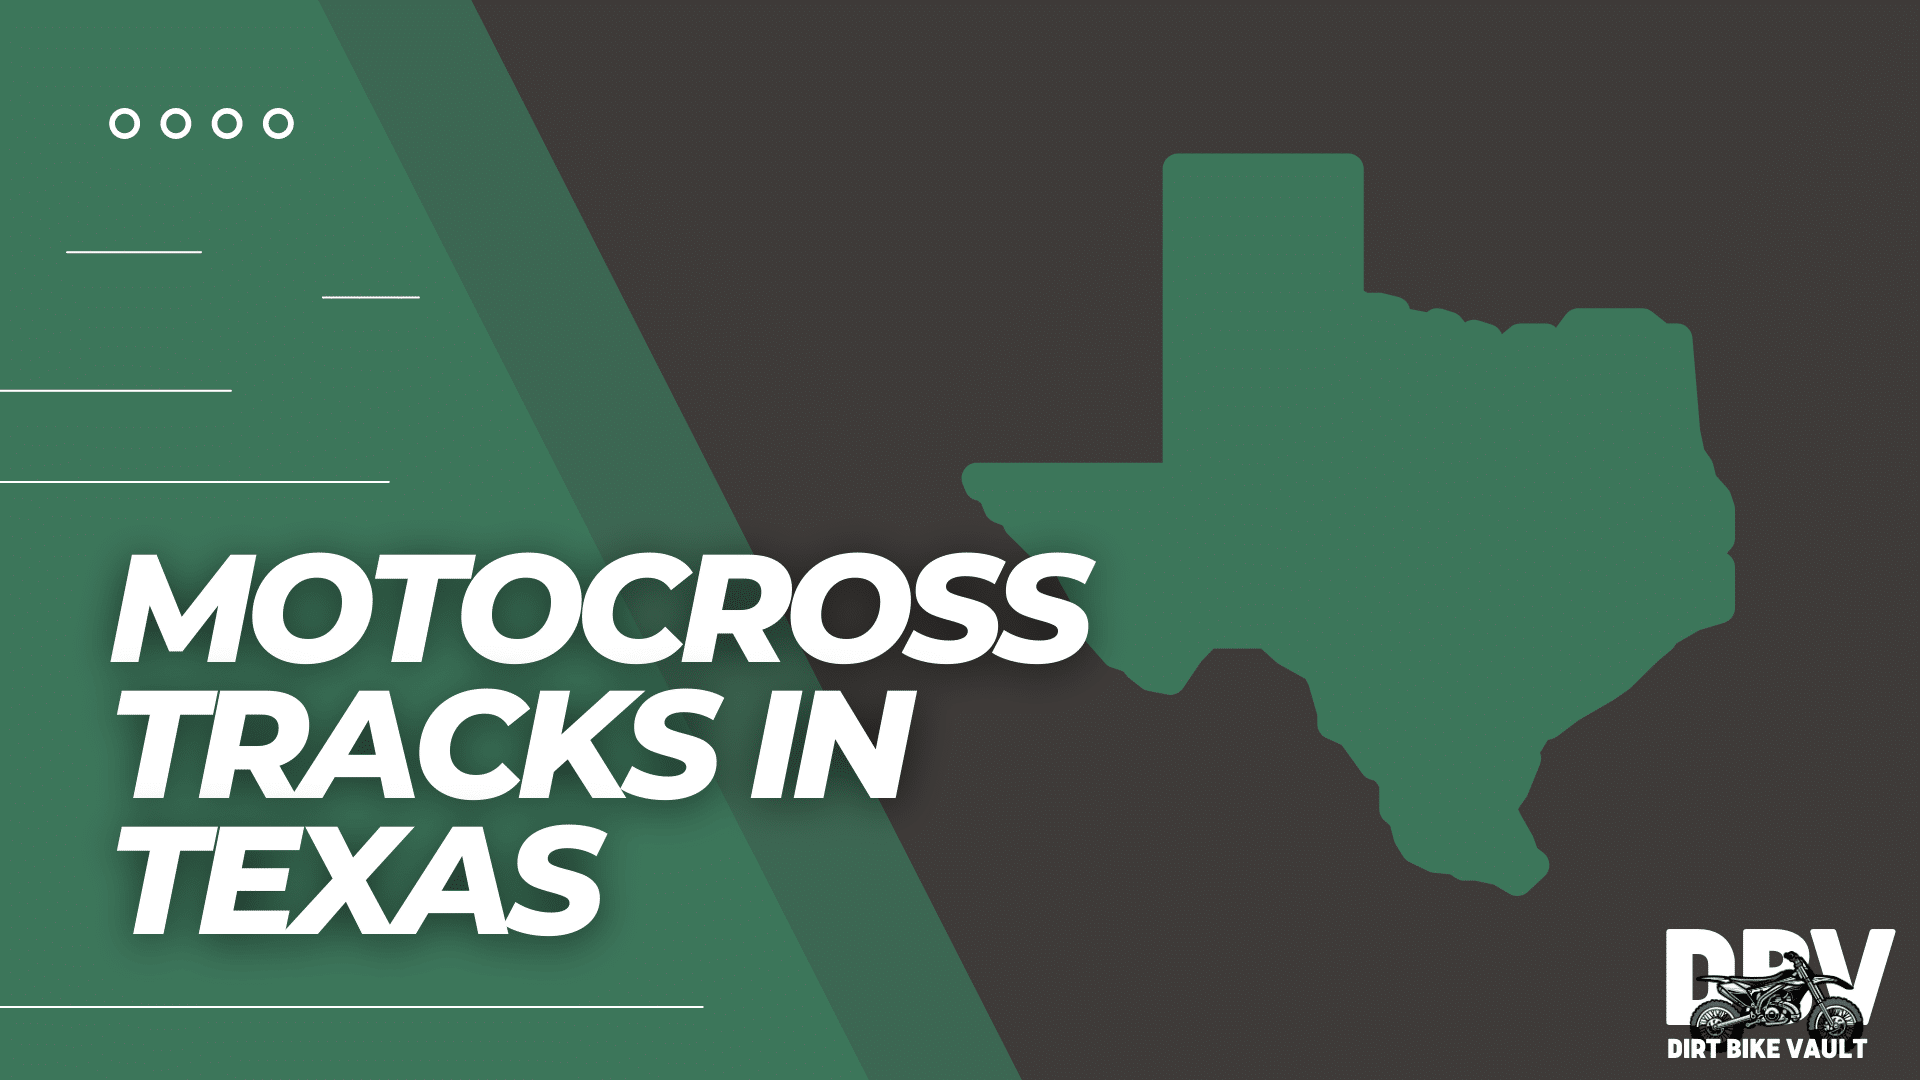 Motocross tracks in Texas